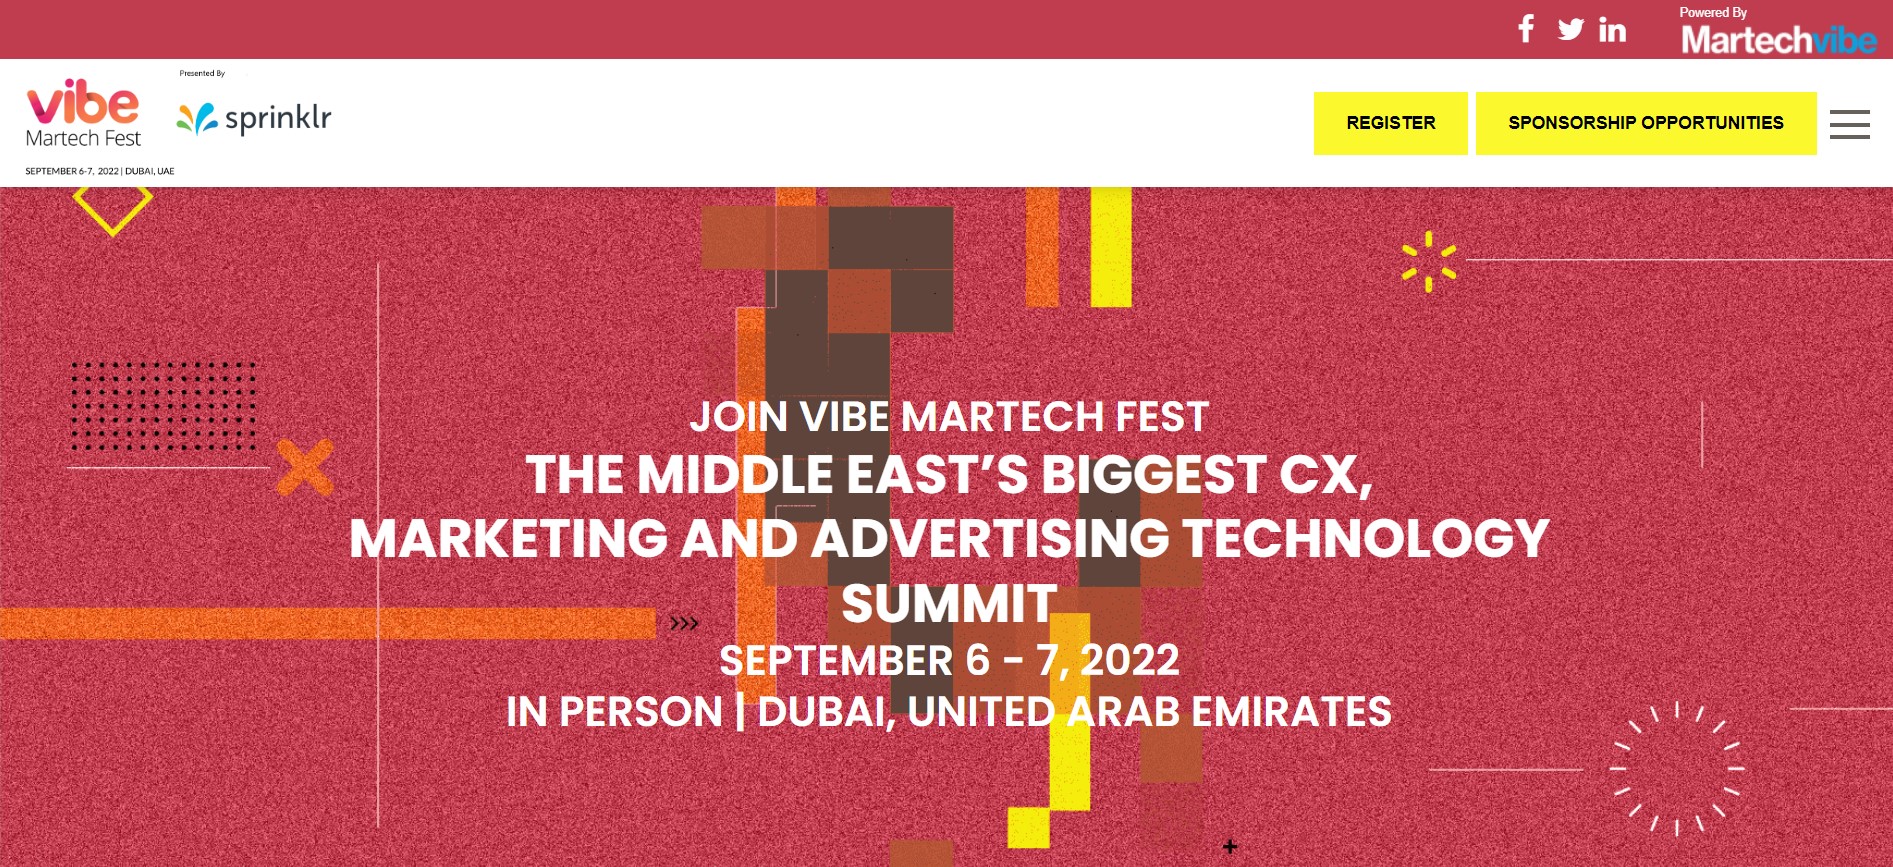 Vibe MarTech Fest 2022